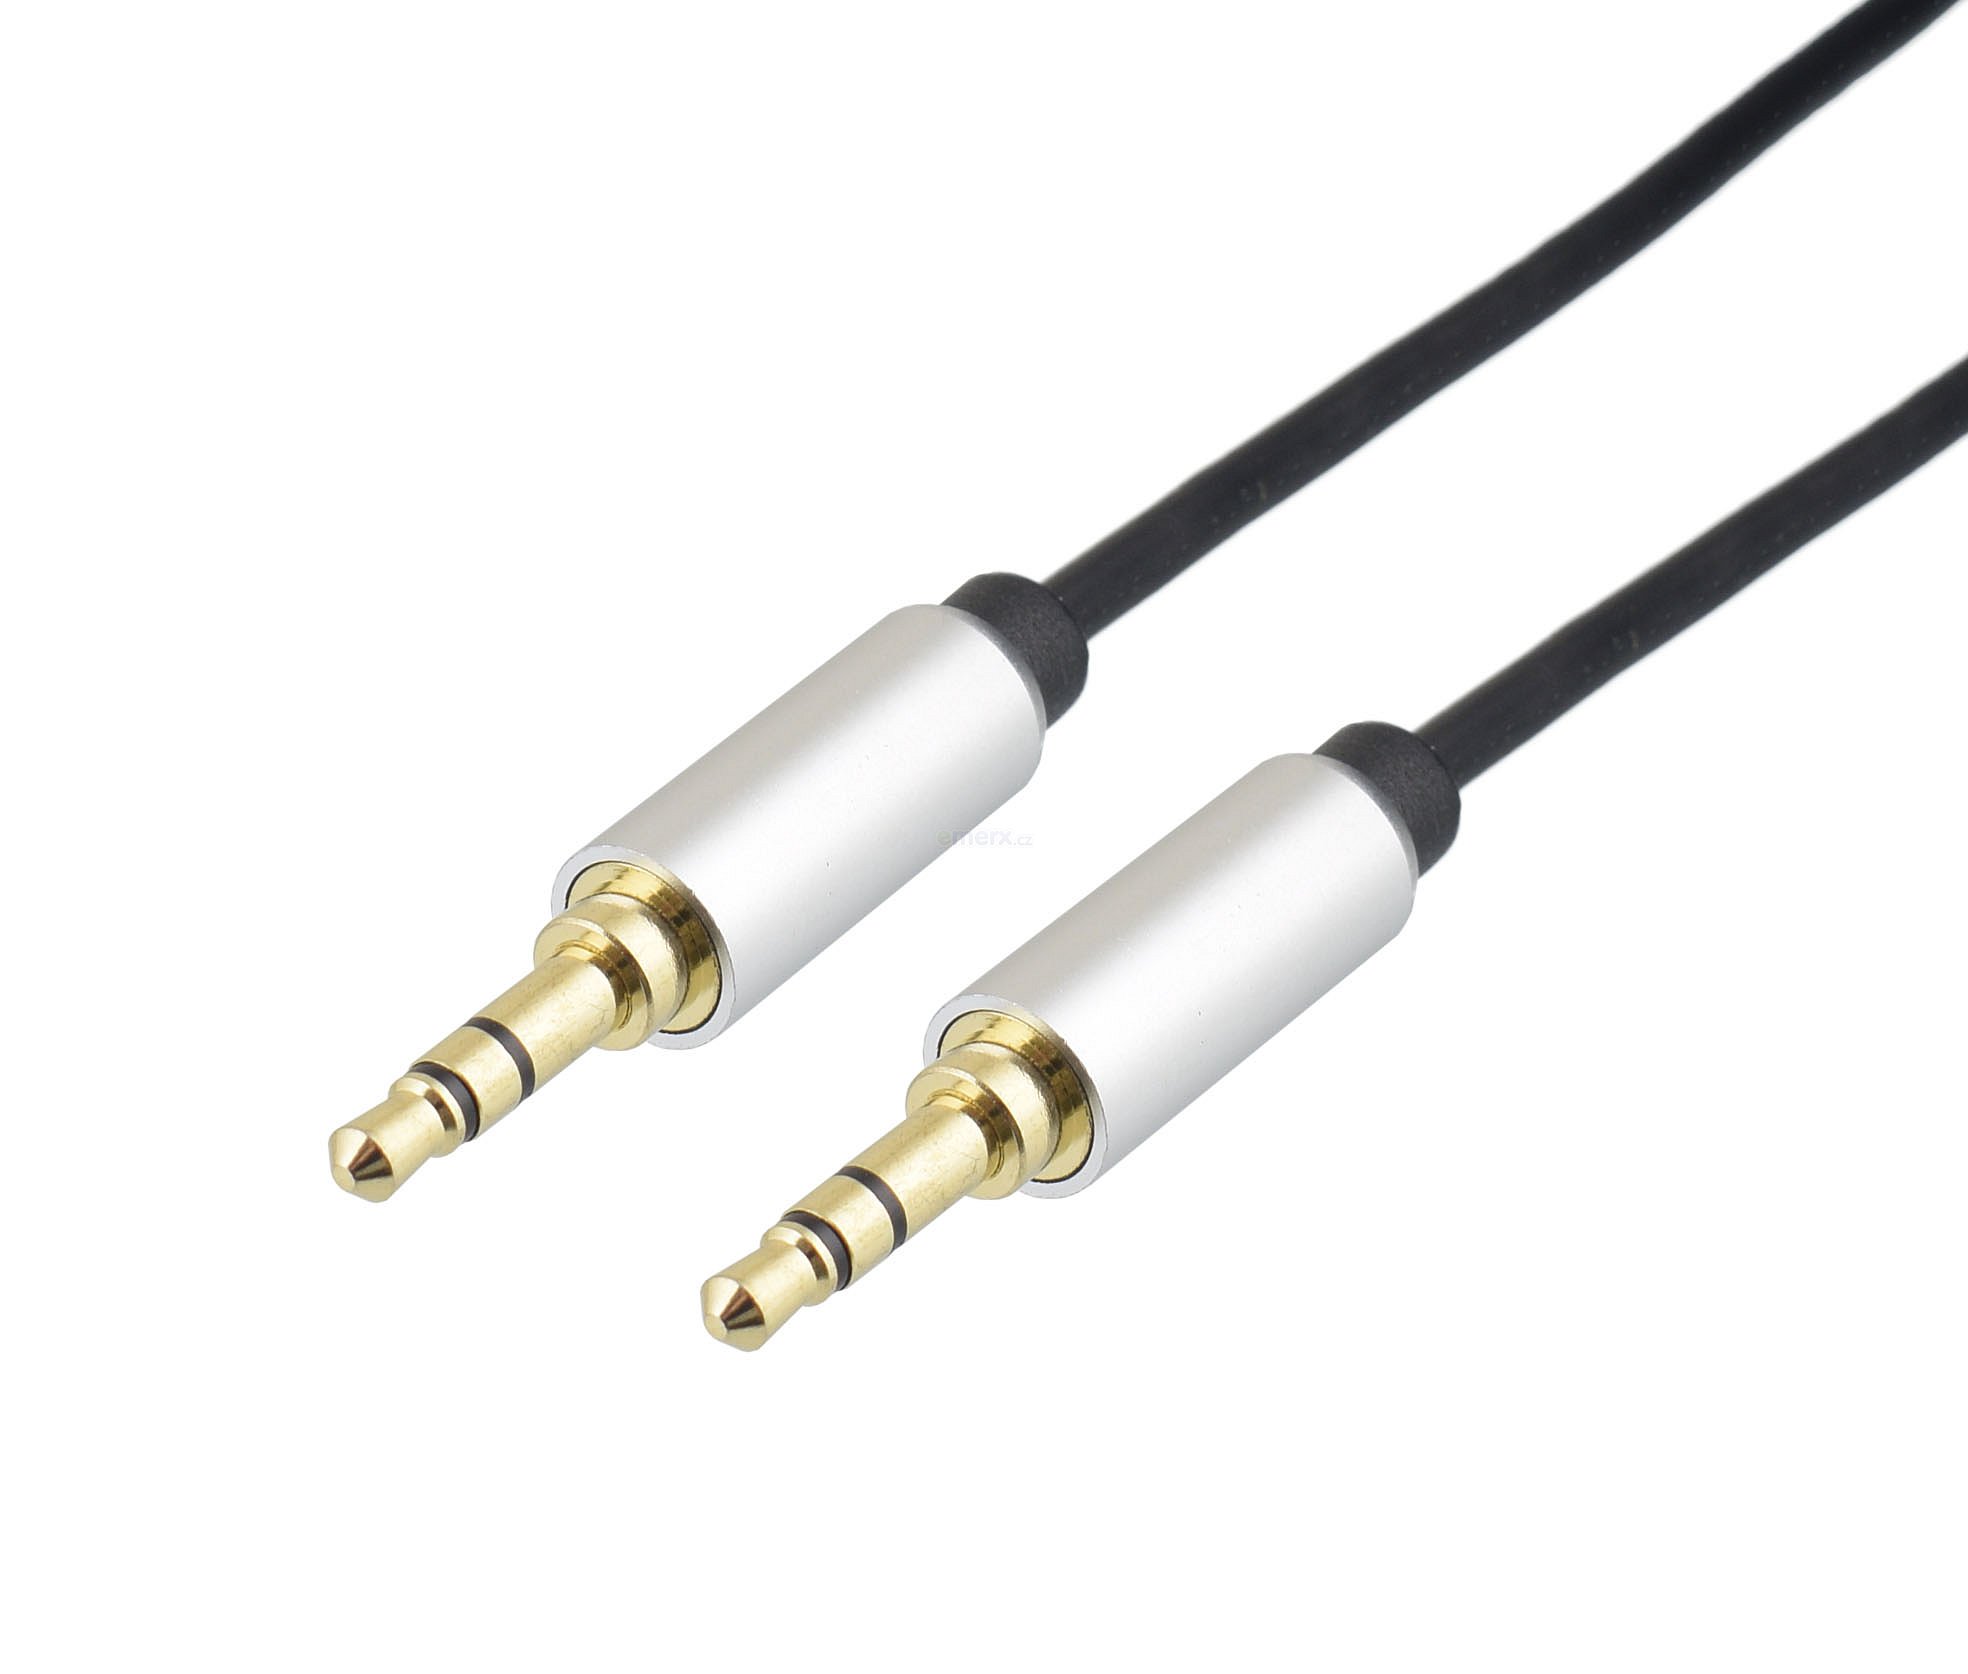 Propojovací audio kabel JACK 3,5mm STEREO vidlice na JACK 3,5mm STEREO vidlice, 3m, zlacený (HS-702-3)